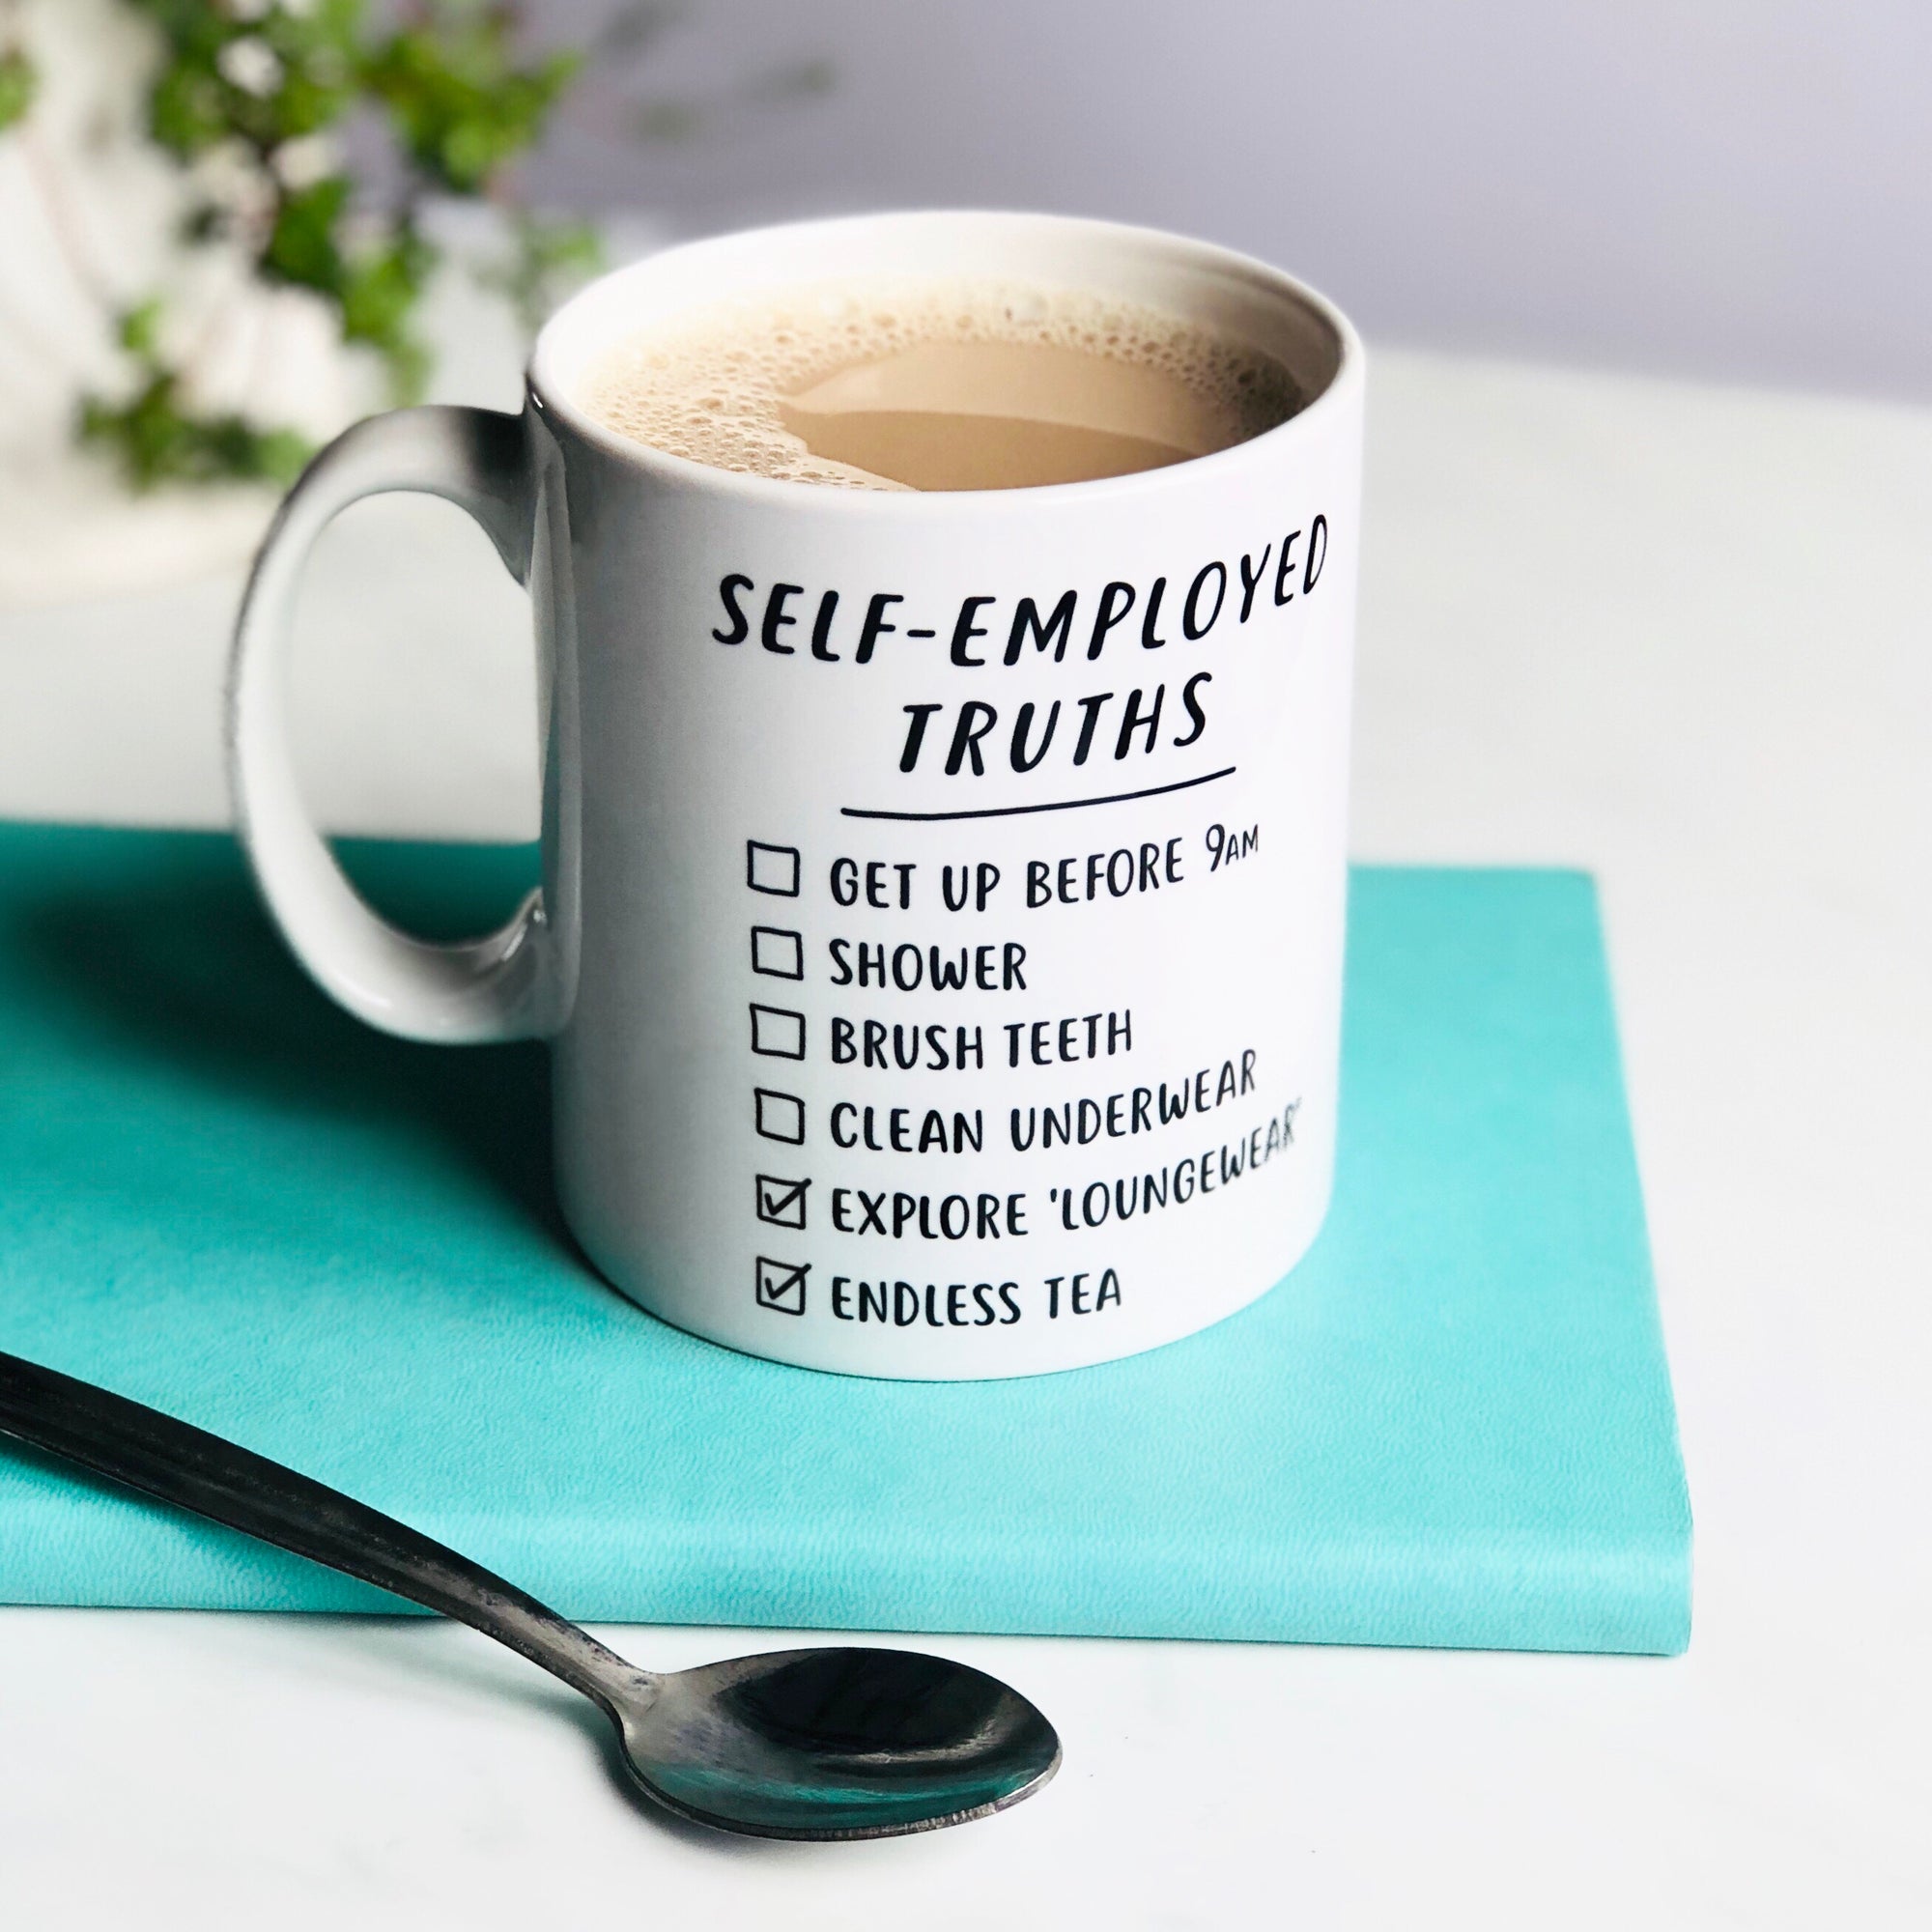 Self-employed Truths Mug